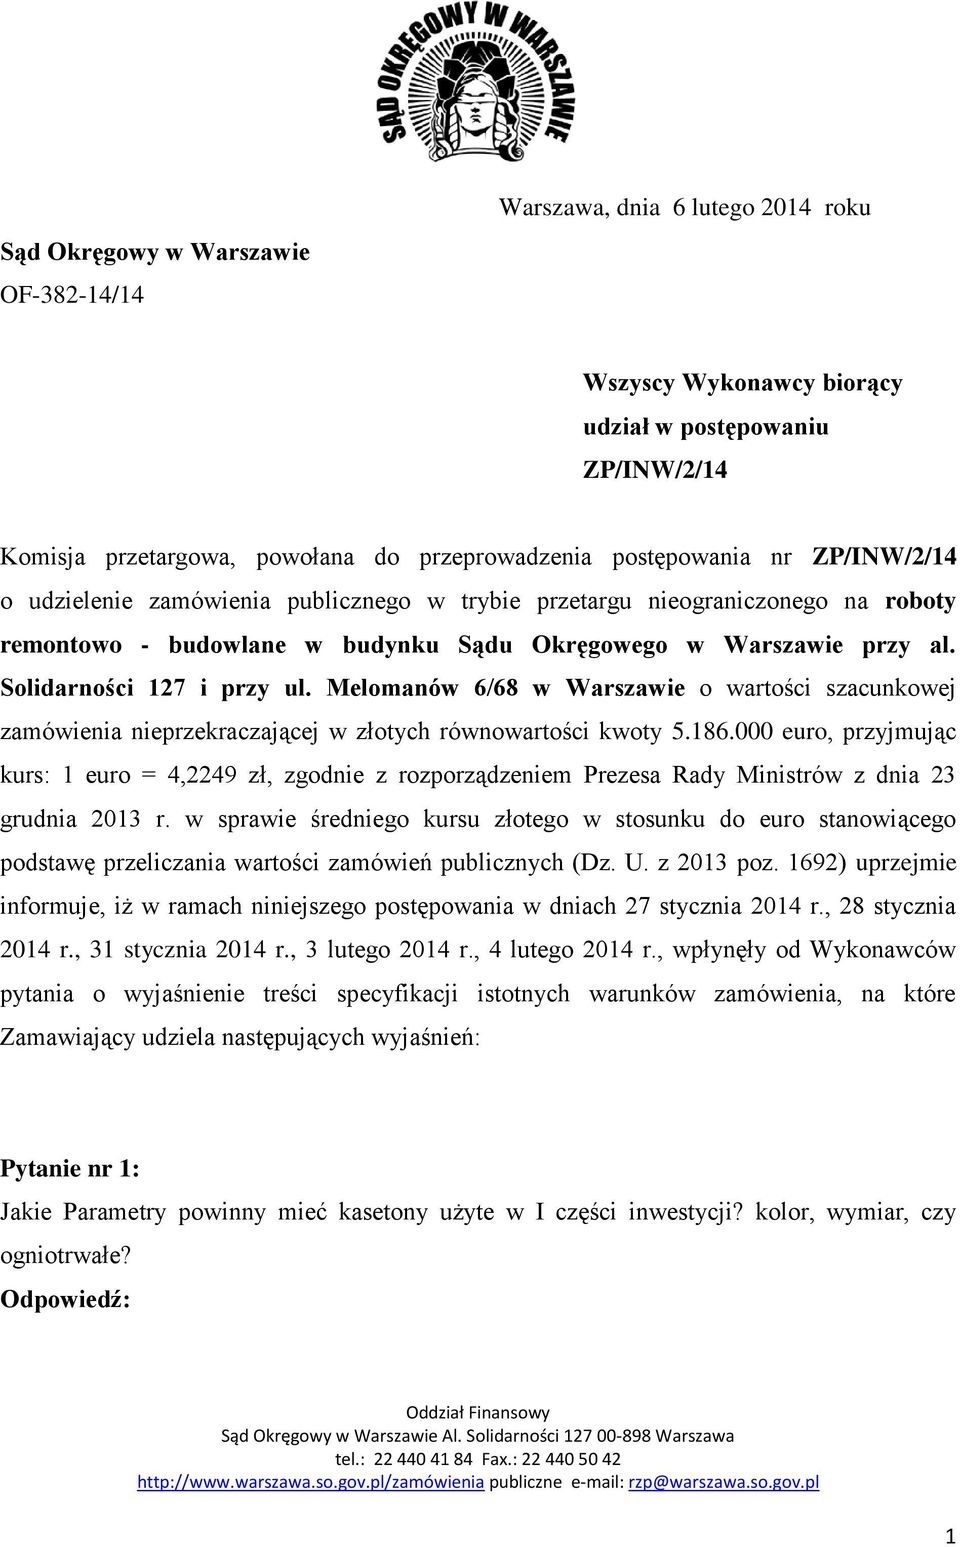 Melomanów 6/68 w Warszawie o wartości szacunkowej zamówienia nieprzekraczającej w złotych równowartości kwoty 5.186.